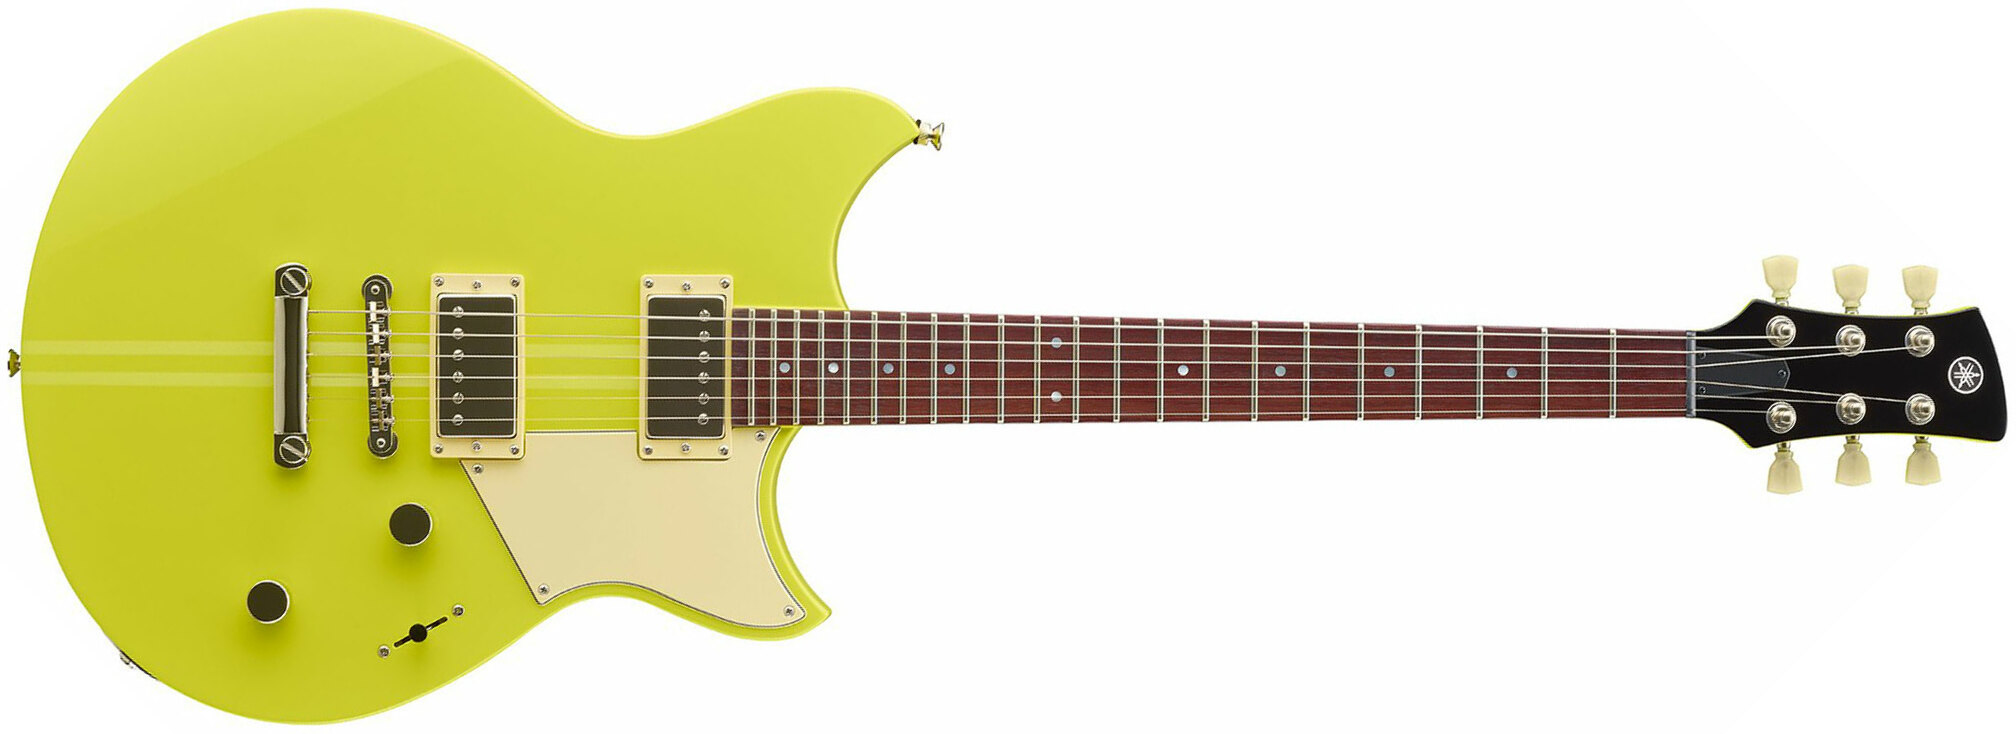 Yamaha Rse20 Revstar Element Hh Ht Rw - Neon Yellow - Guitarra eléctrica de doble corte. - Main picture